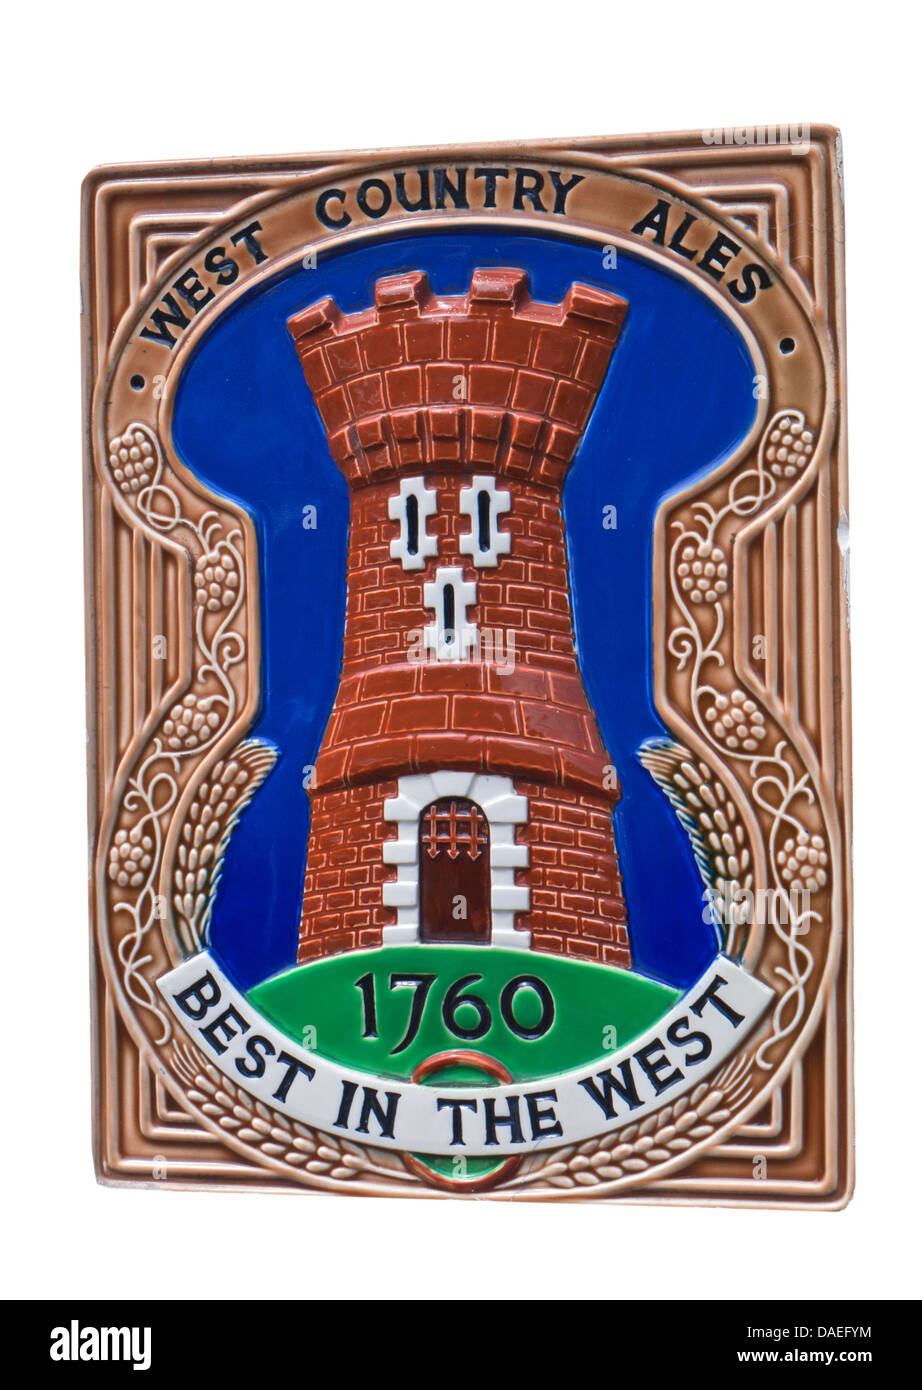 Historische Keramik Plaque an öffentlichen Hauswand Förderung West Country Ales in den 50er und 60er Jahre Stockfoto